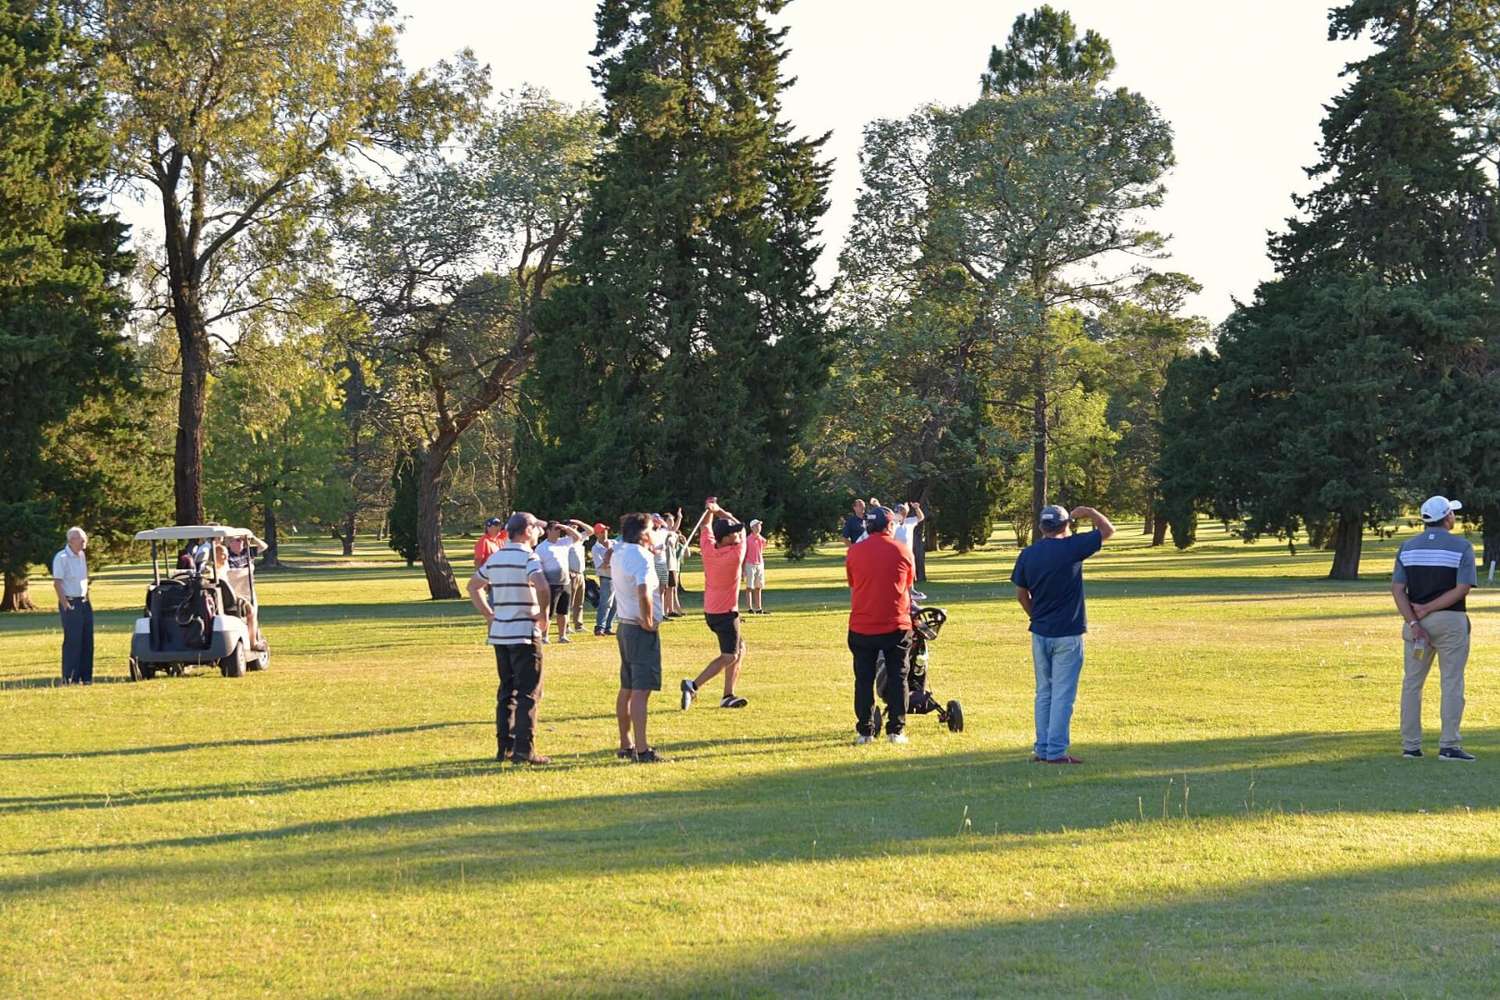 Golf: Homenajearán al doctor Altuna con un torneo a su nombre 